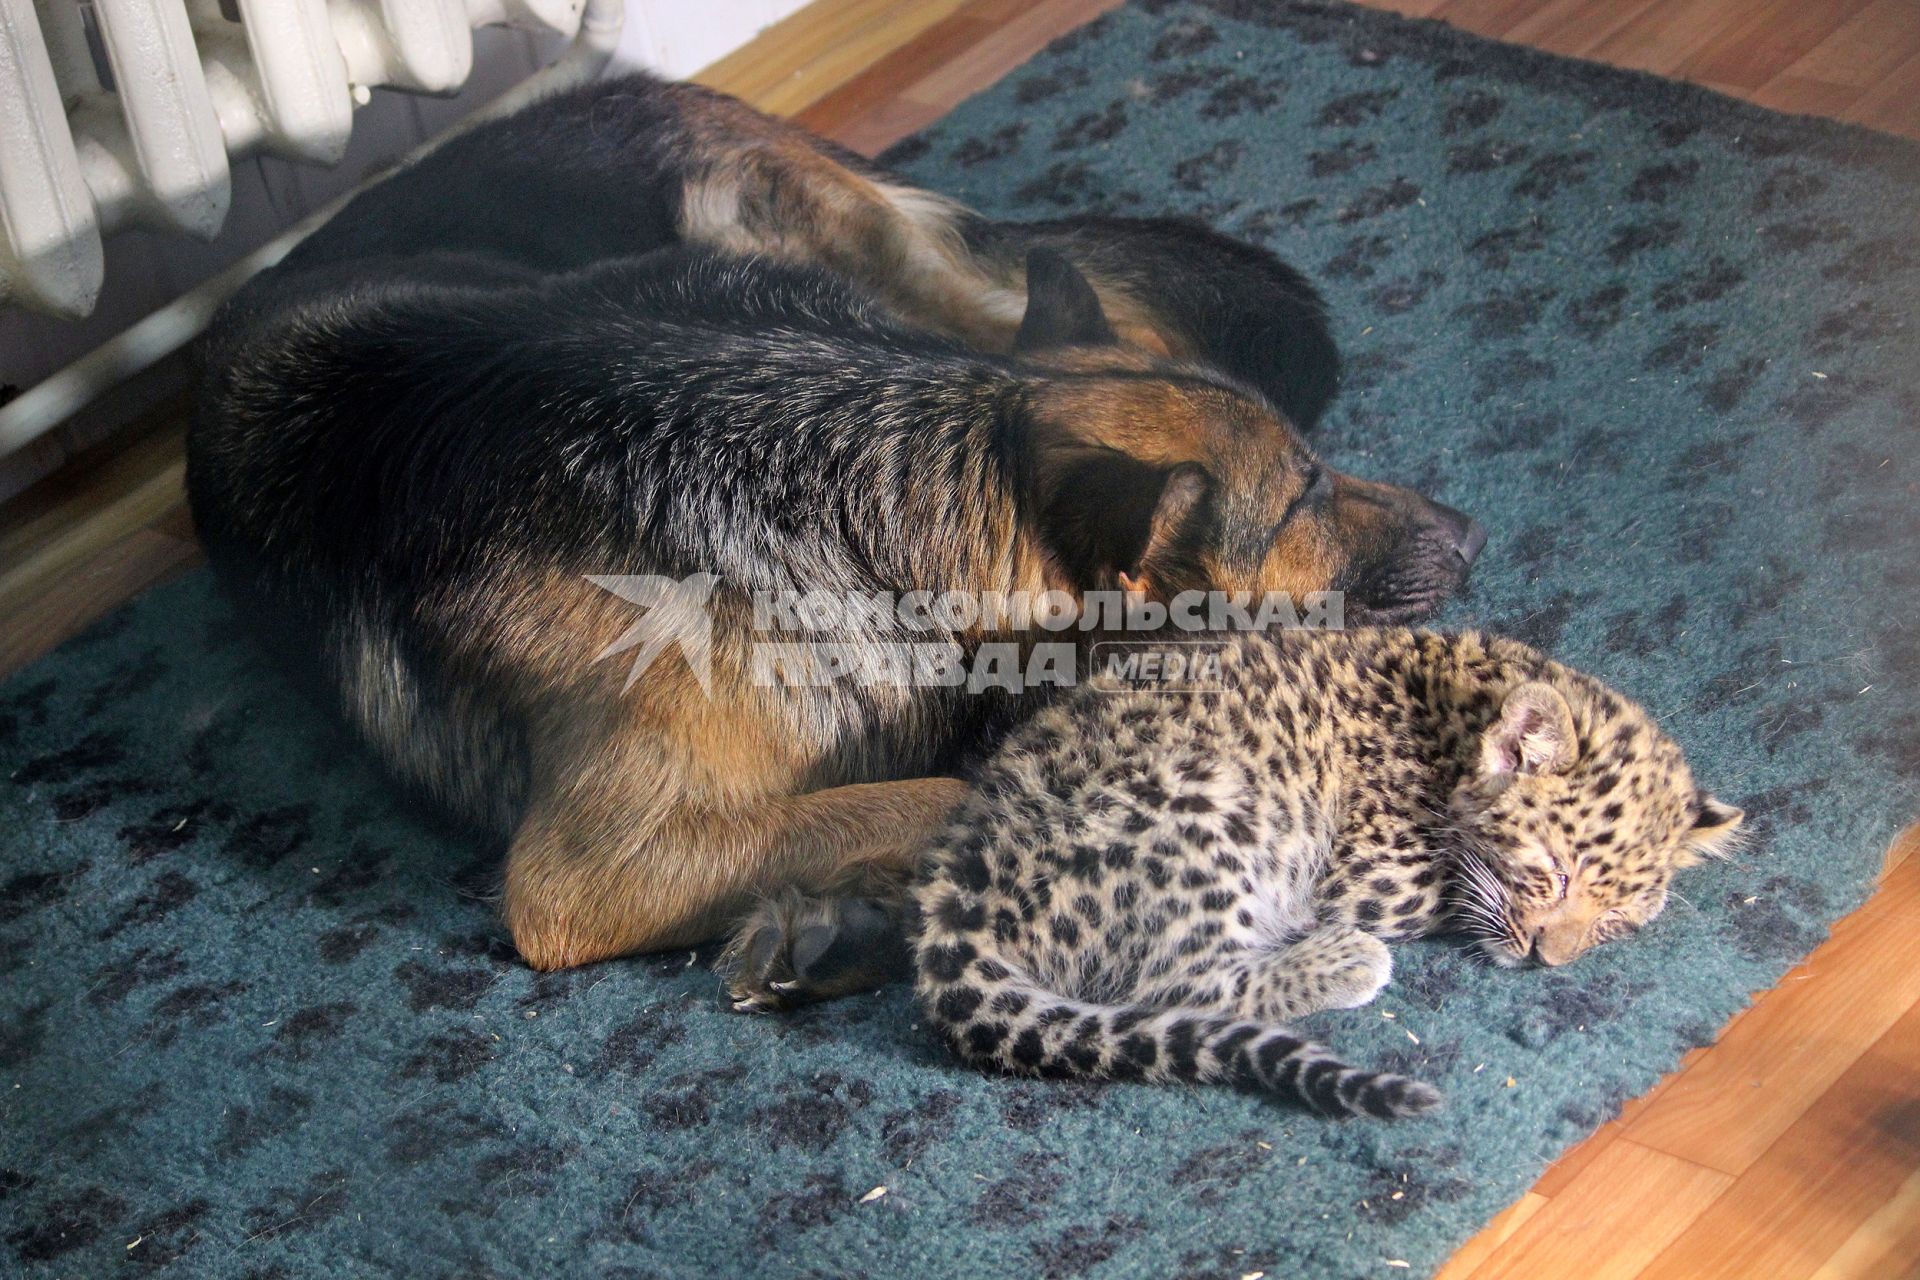 В зоопарке Самары родился леопарденок, которого назвали Олимпиада. Маленького леопарда выкармливает овчарка по кличке Пайпер